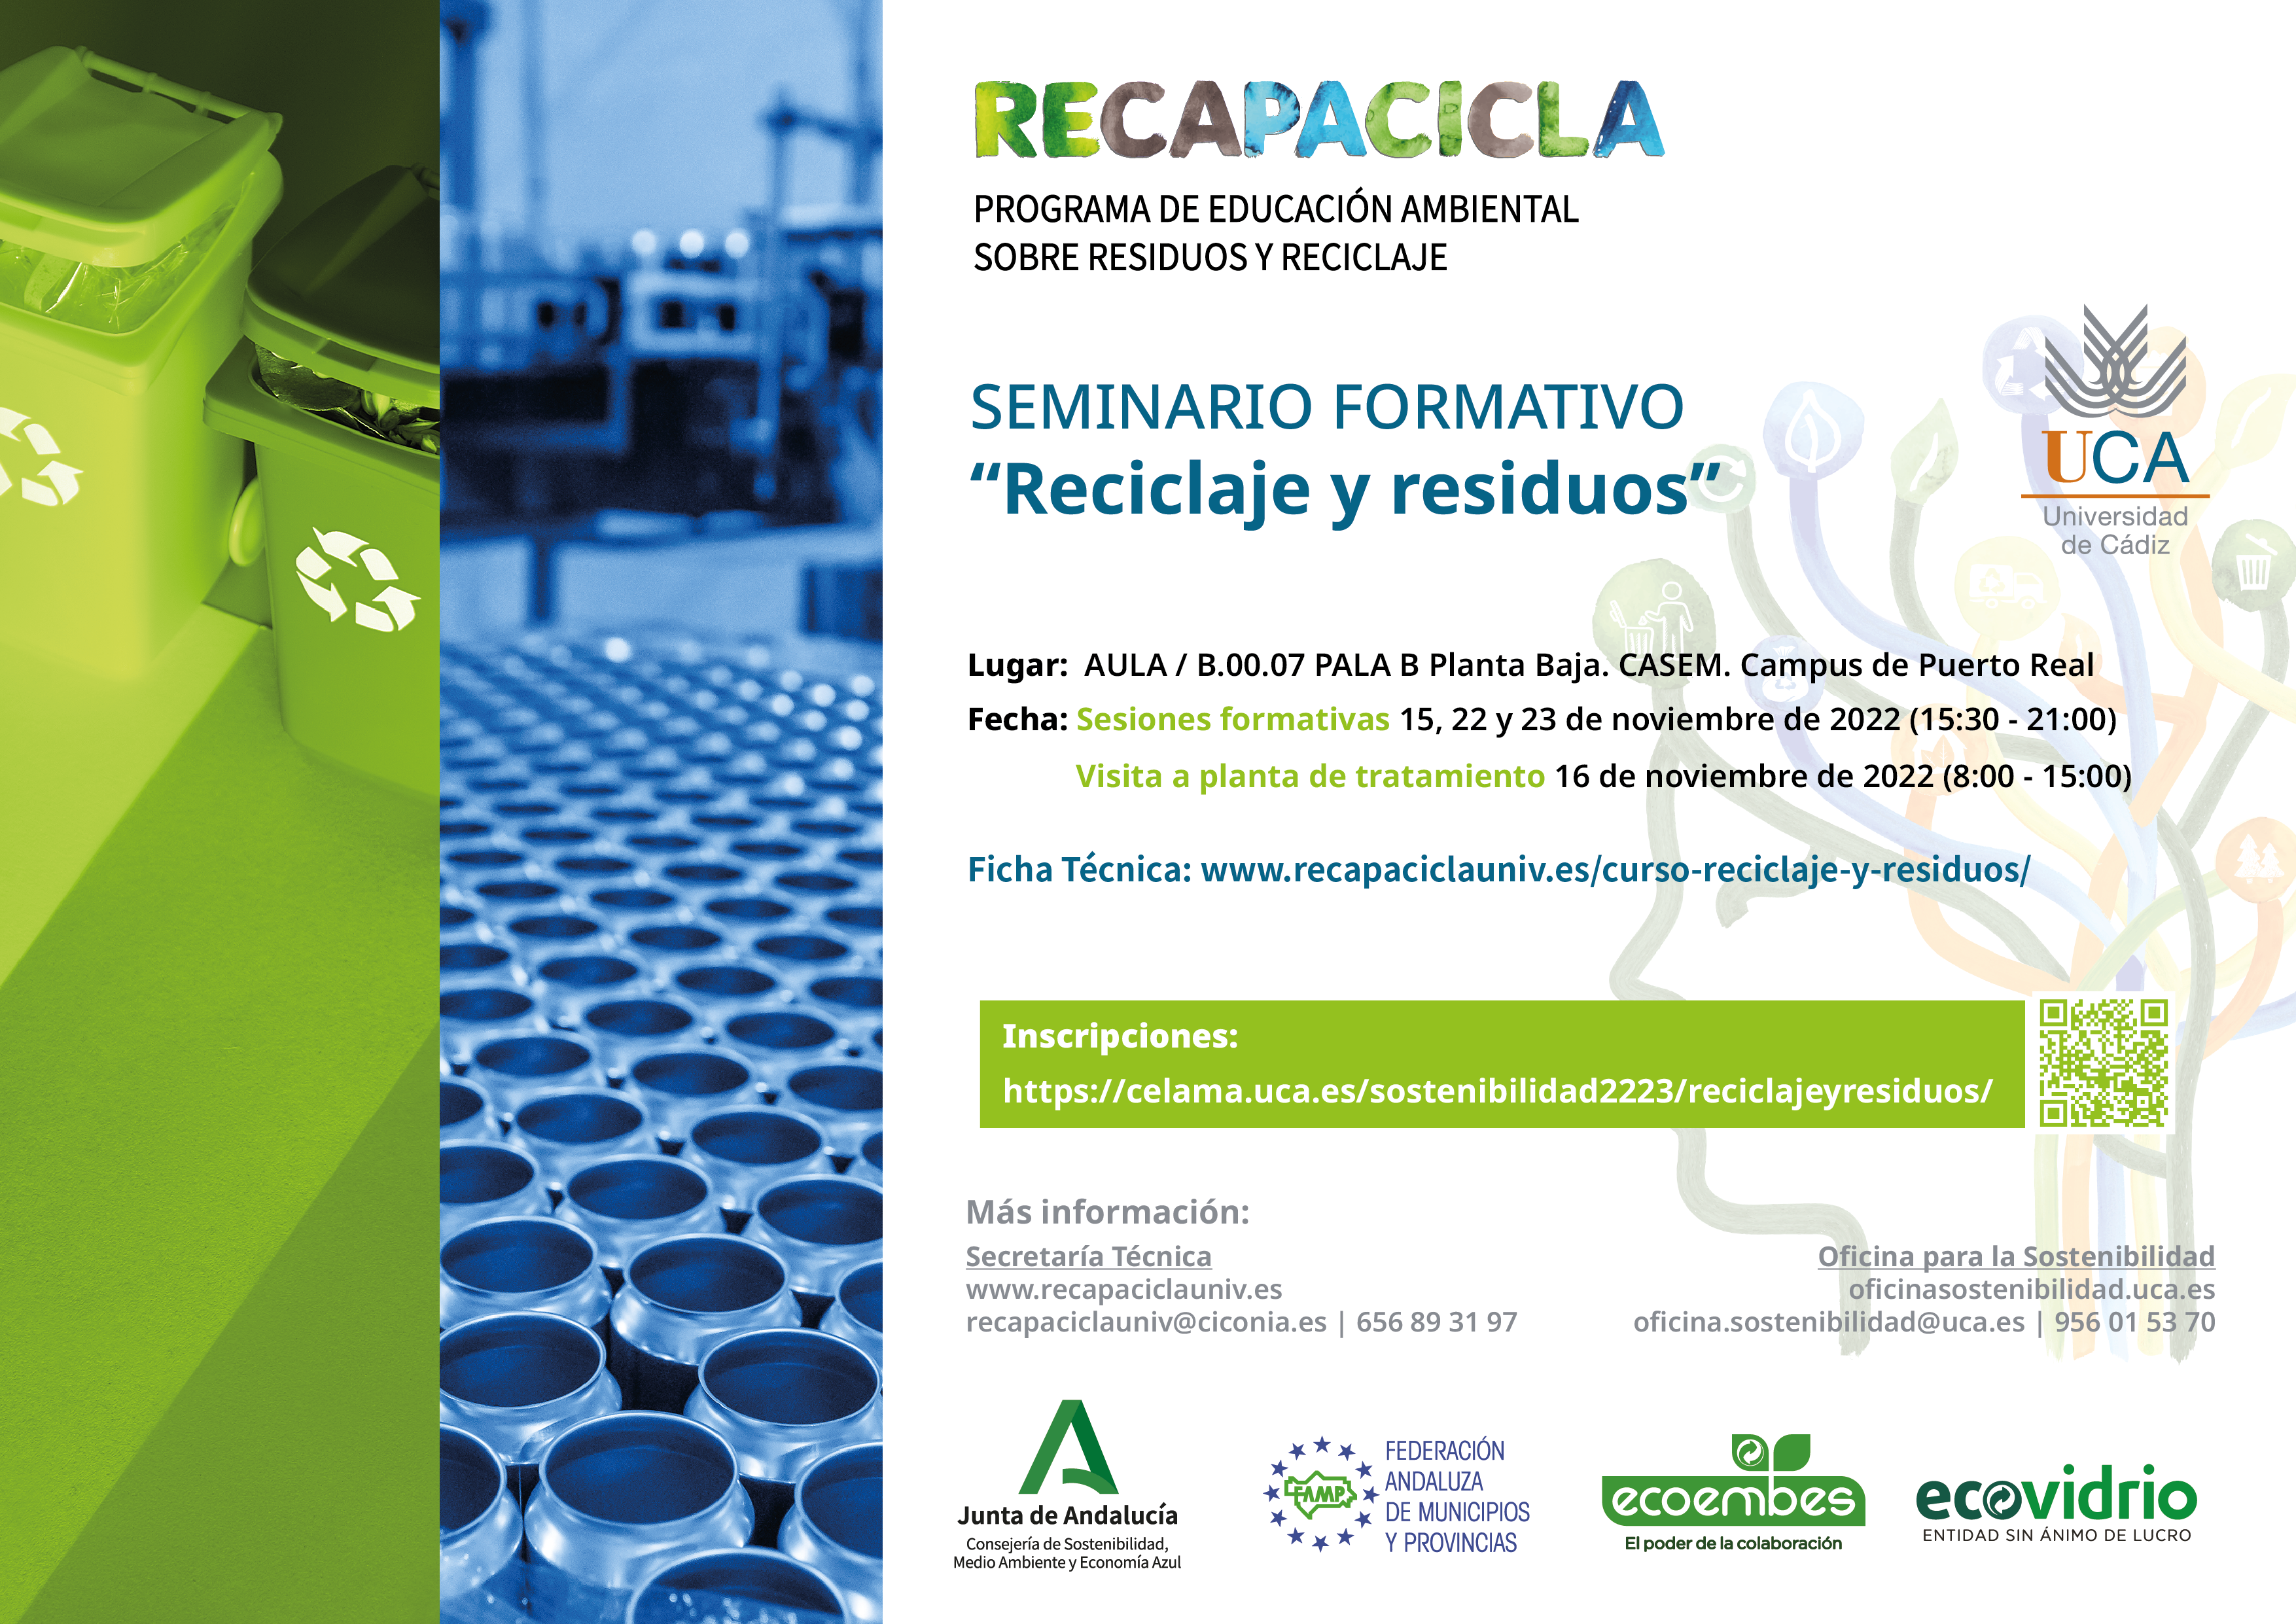 Se abre el periodo de inscripción para el Seminario formativo “Reciclaje y Residuos” del programa RECAPACICLA